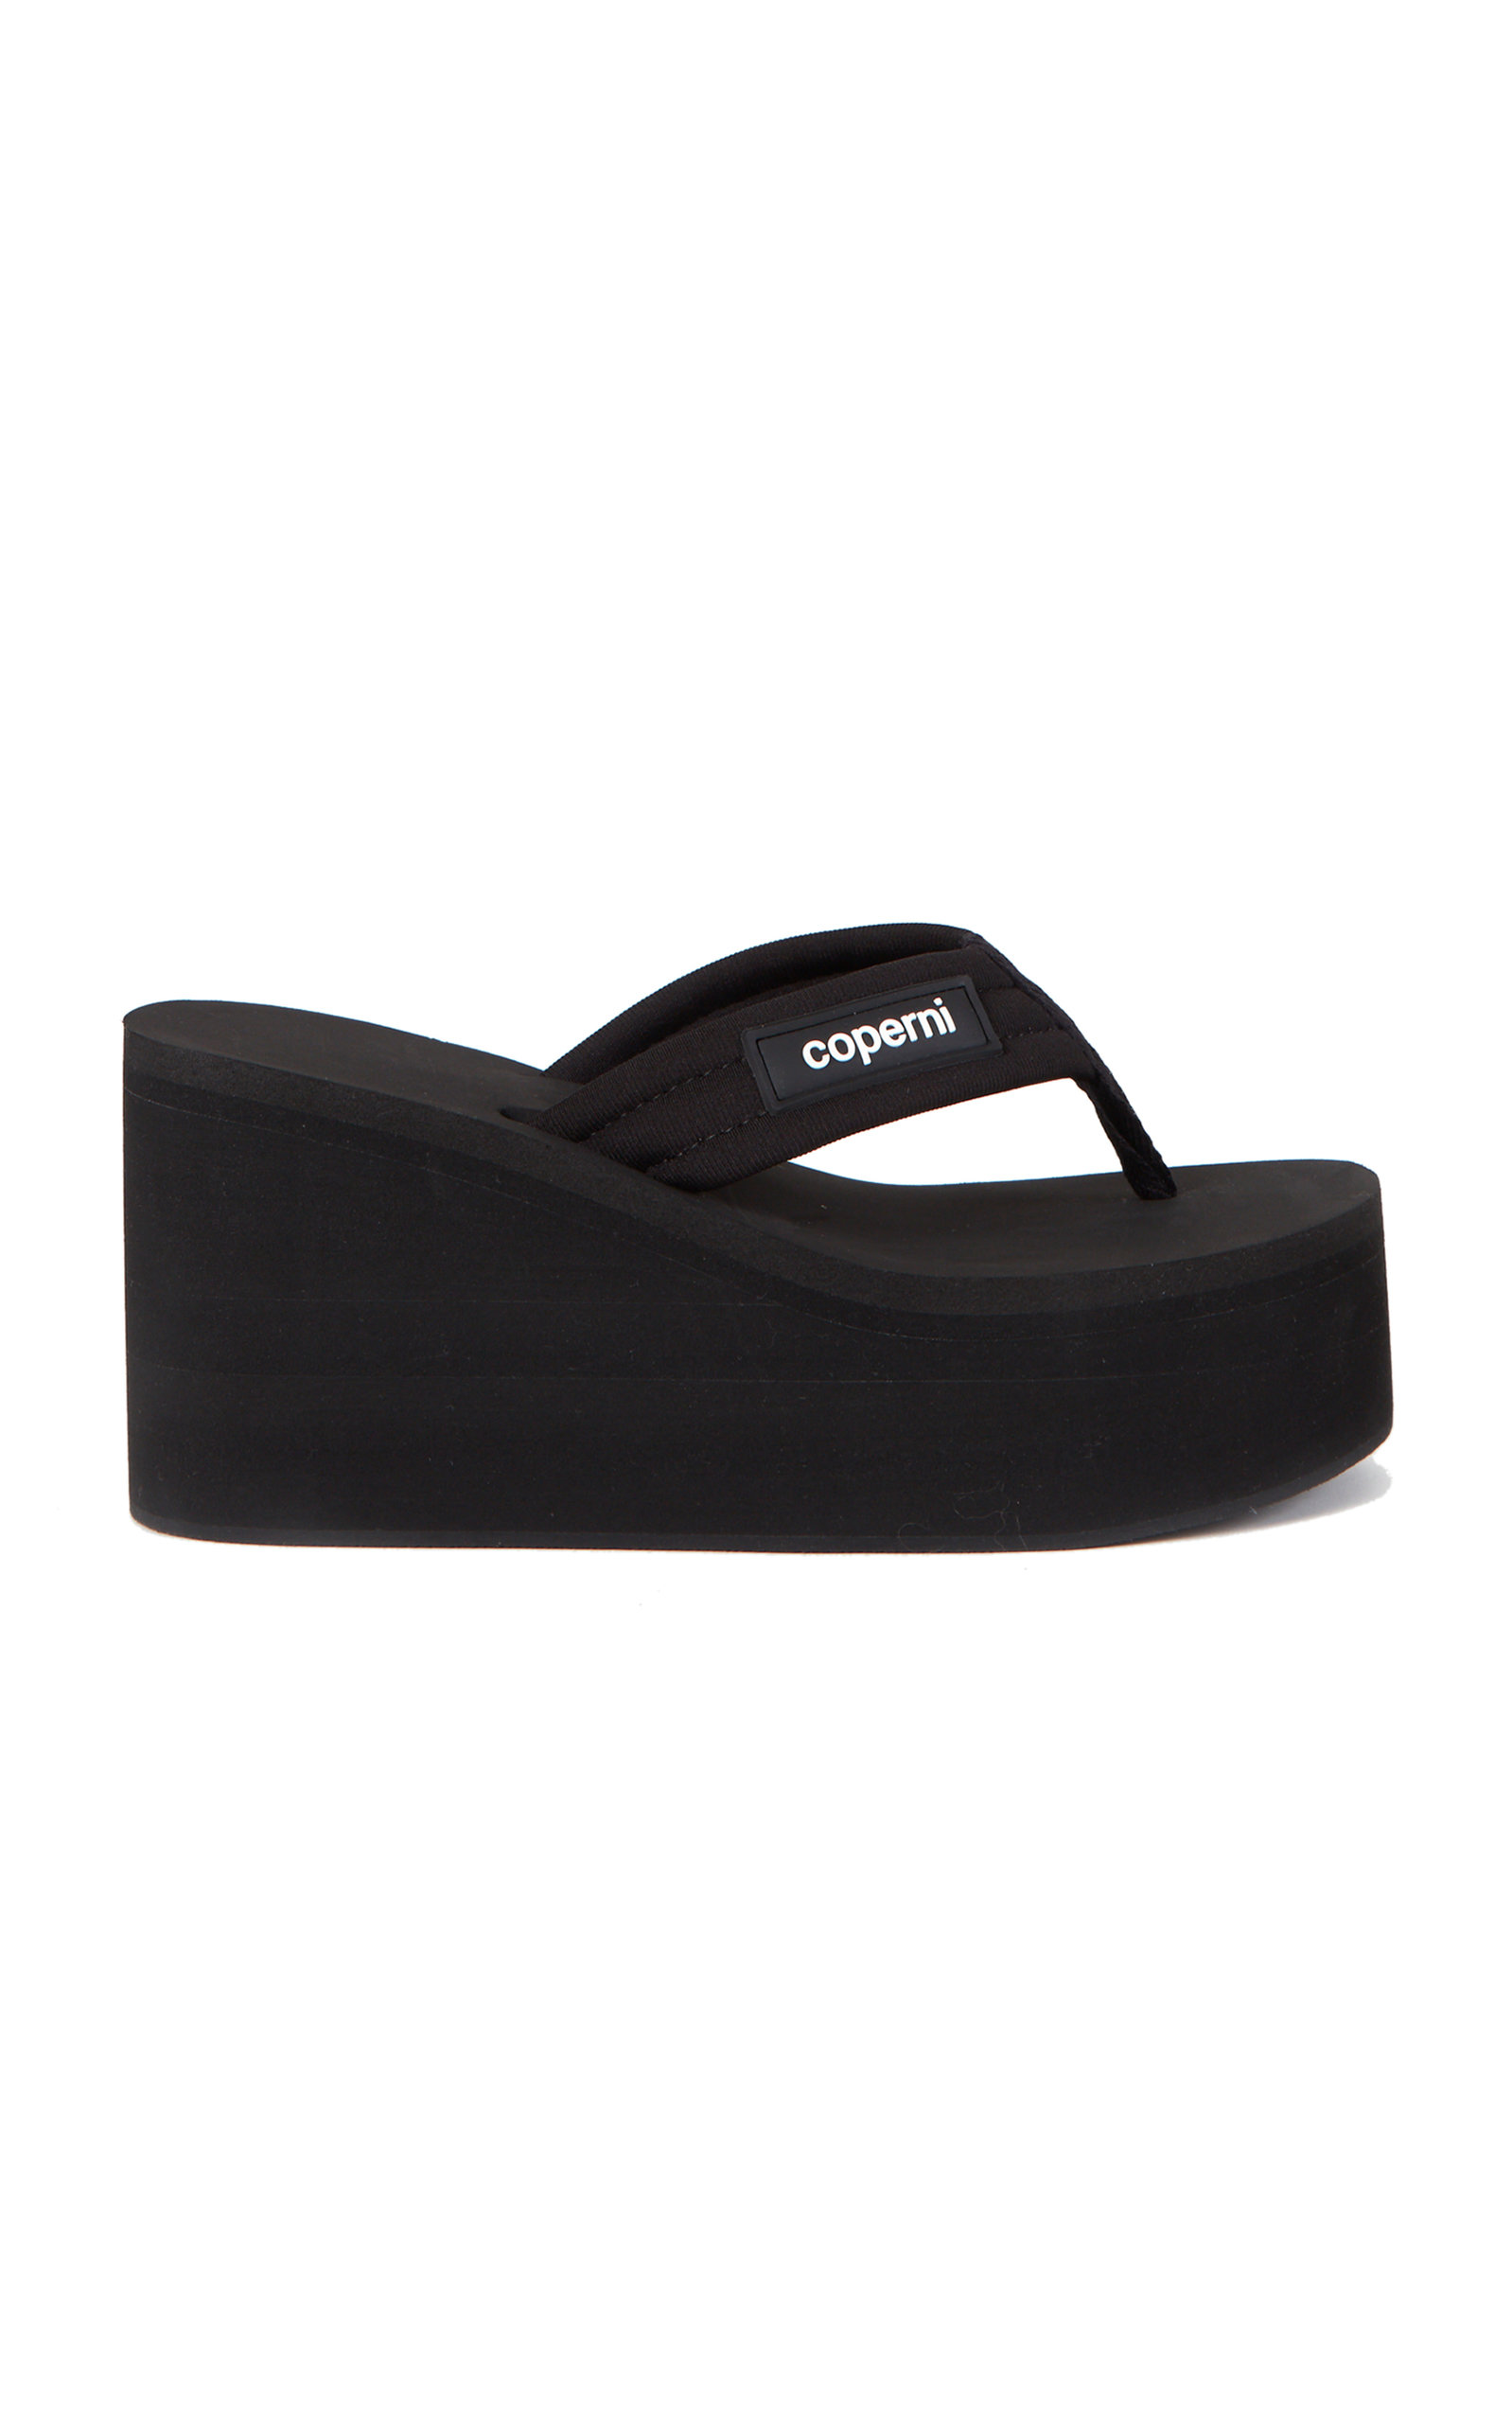 Coperni - Women's Branded Sandals - Black - Only At Moda Operandi